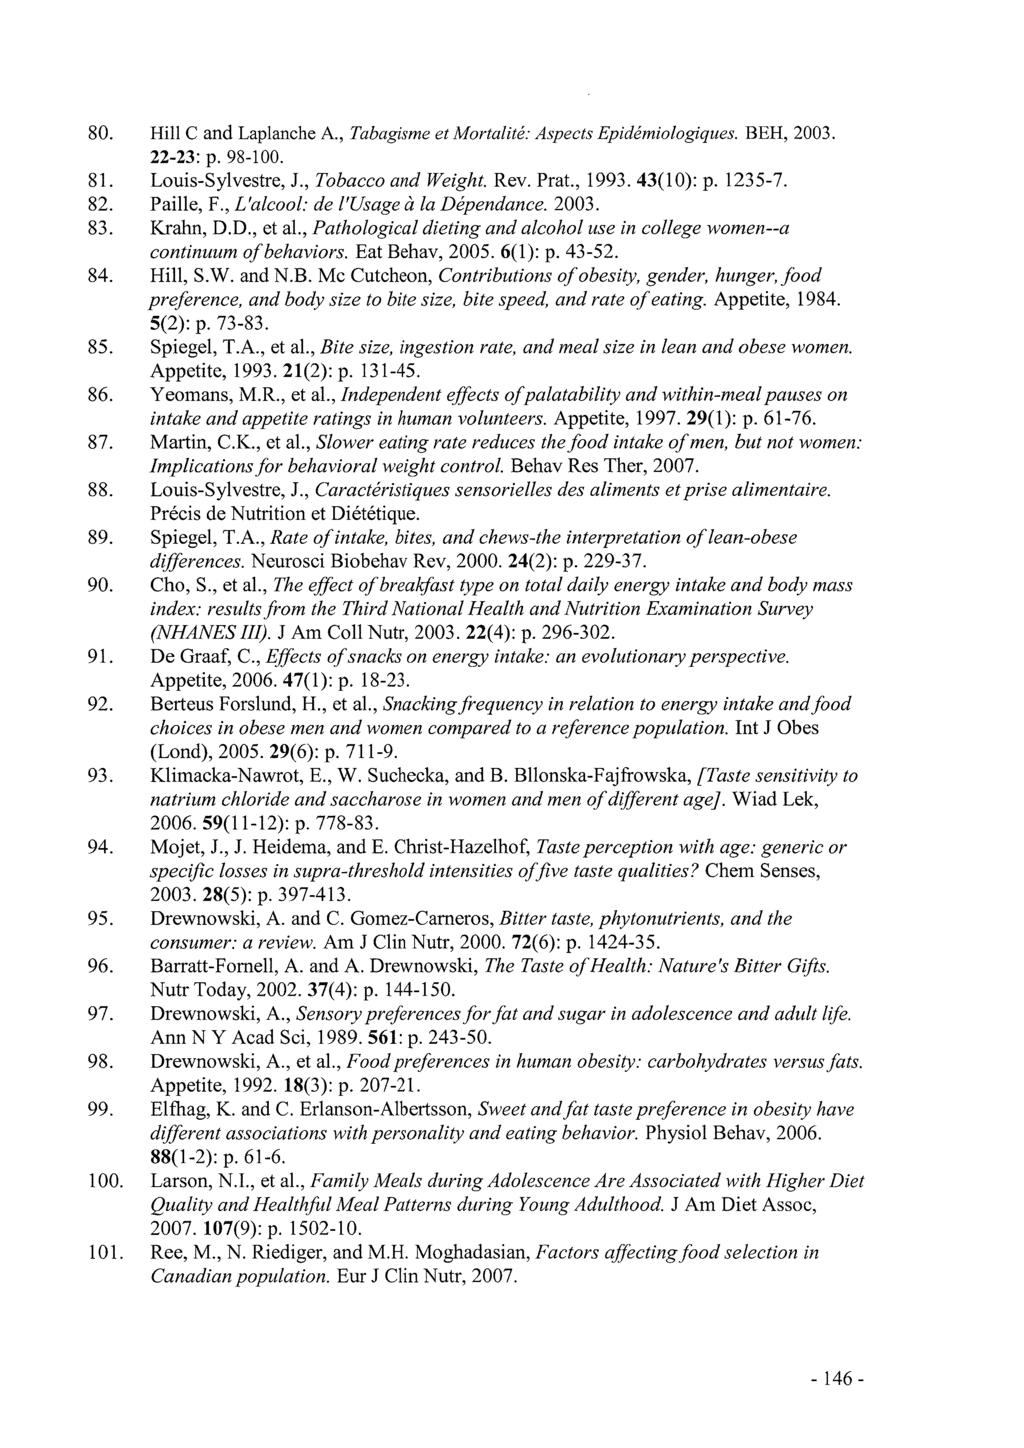 Hill C and Laplanche A., Tabagisme et Mortalité: Aspects Epidémiologiques. BEH, 2003. 22-23: p. 98-100. Louis-Sylvestre, J., Tobacco and Weight. Rev. Prat., 1993. 43(10): p. 1235-7. Paille, F.